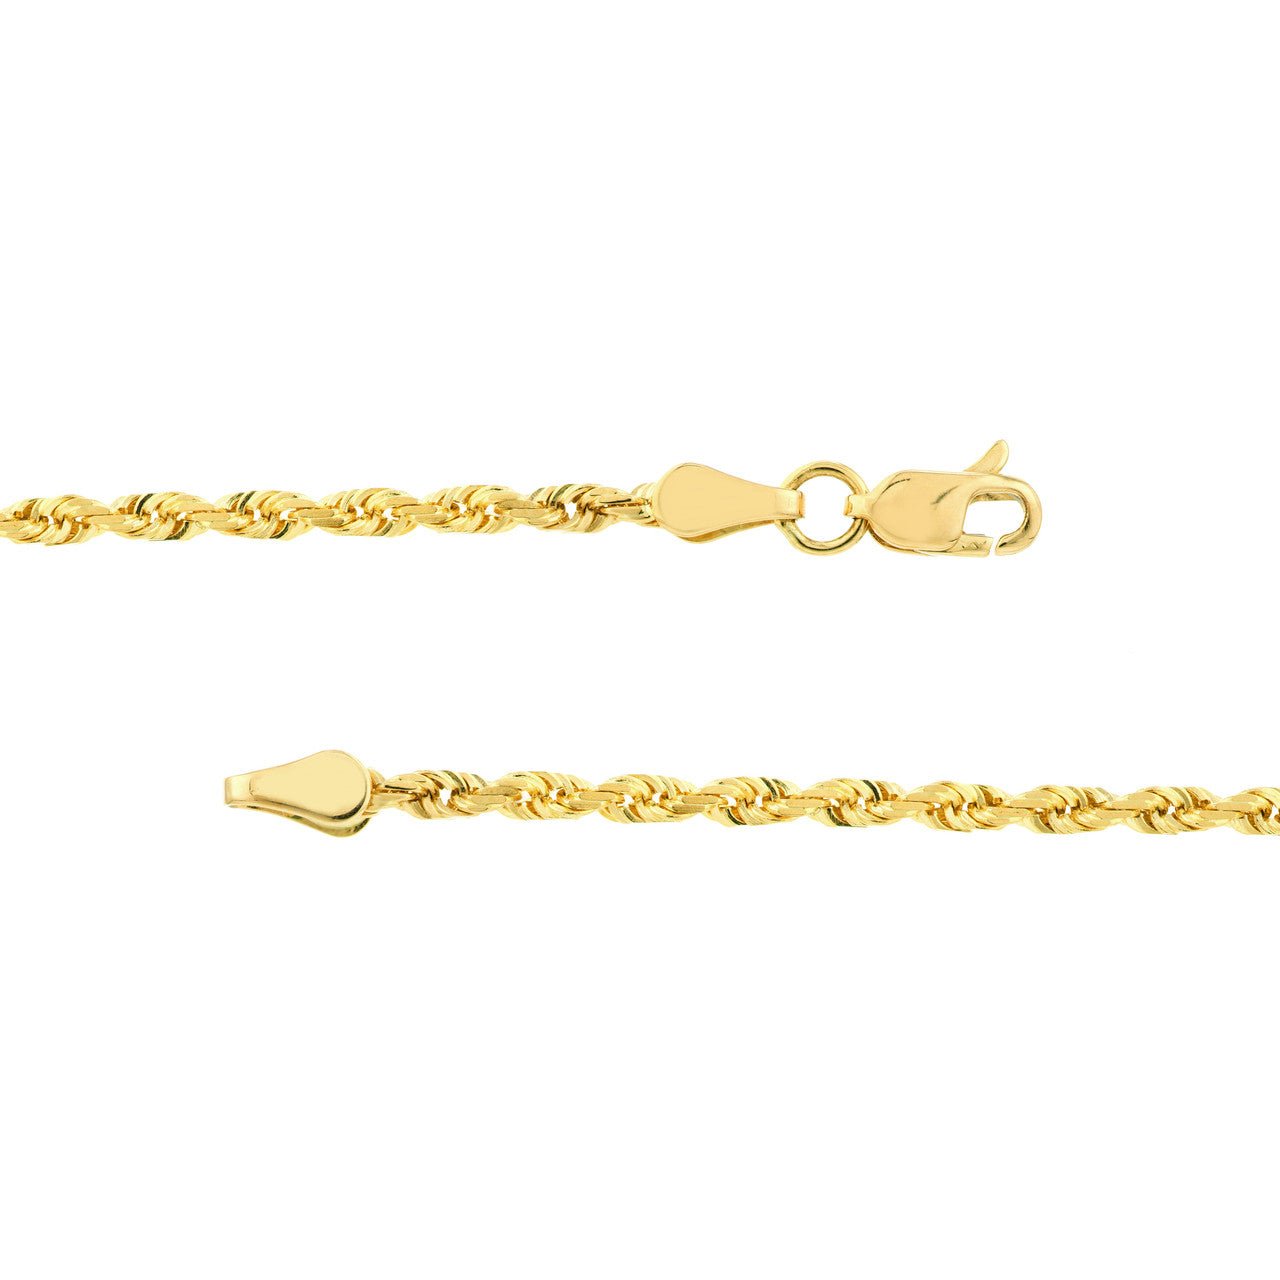 Buy Layered 14KT Rose Gold Necklace Online | ORRA